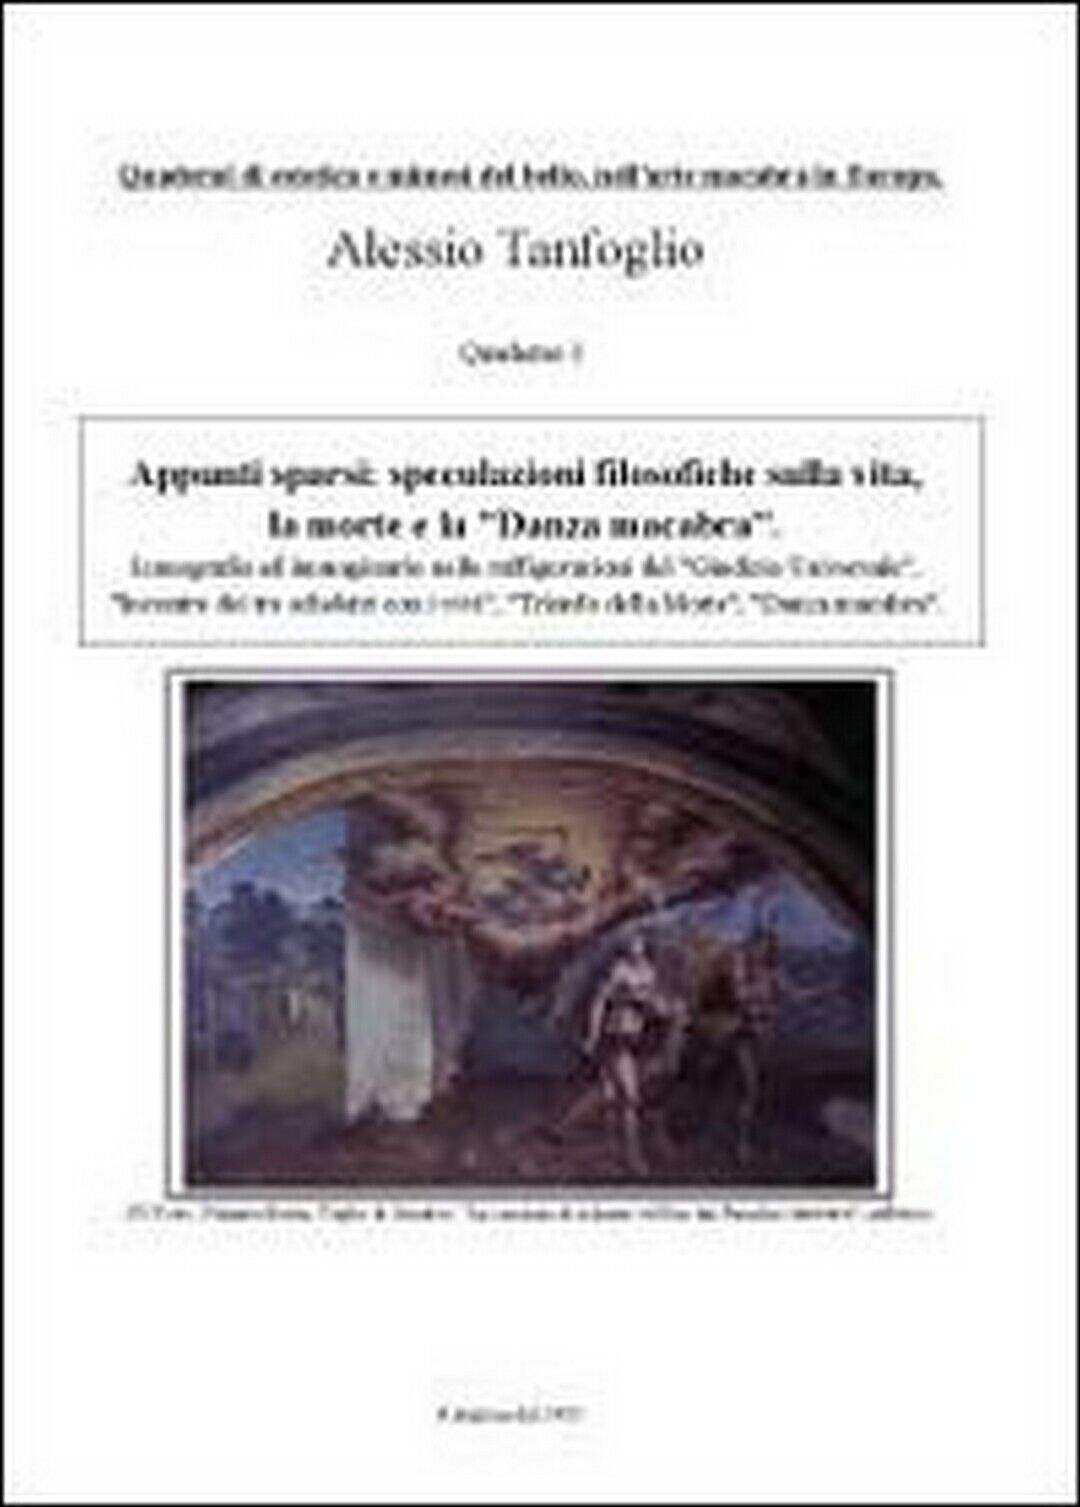 Appunti sparsi: speculazioni filosofiche, Alessio Tanfoglio,  2012,  Youcanprint